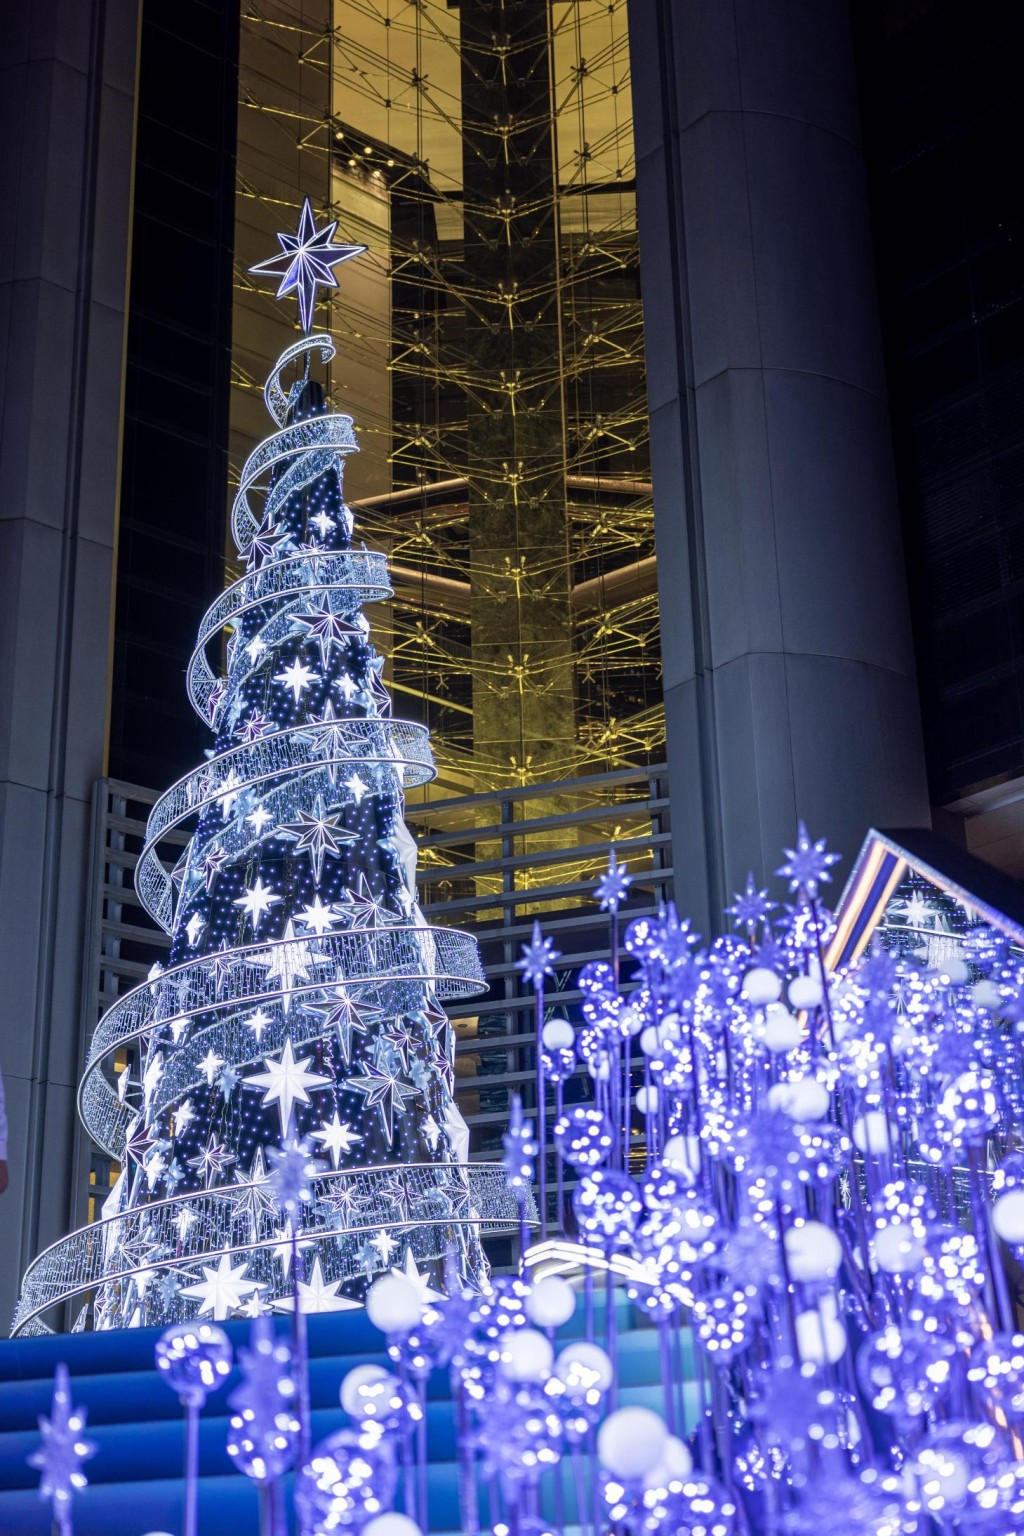 璀璨閃爍的聖誕樹足足有10米高。